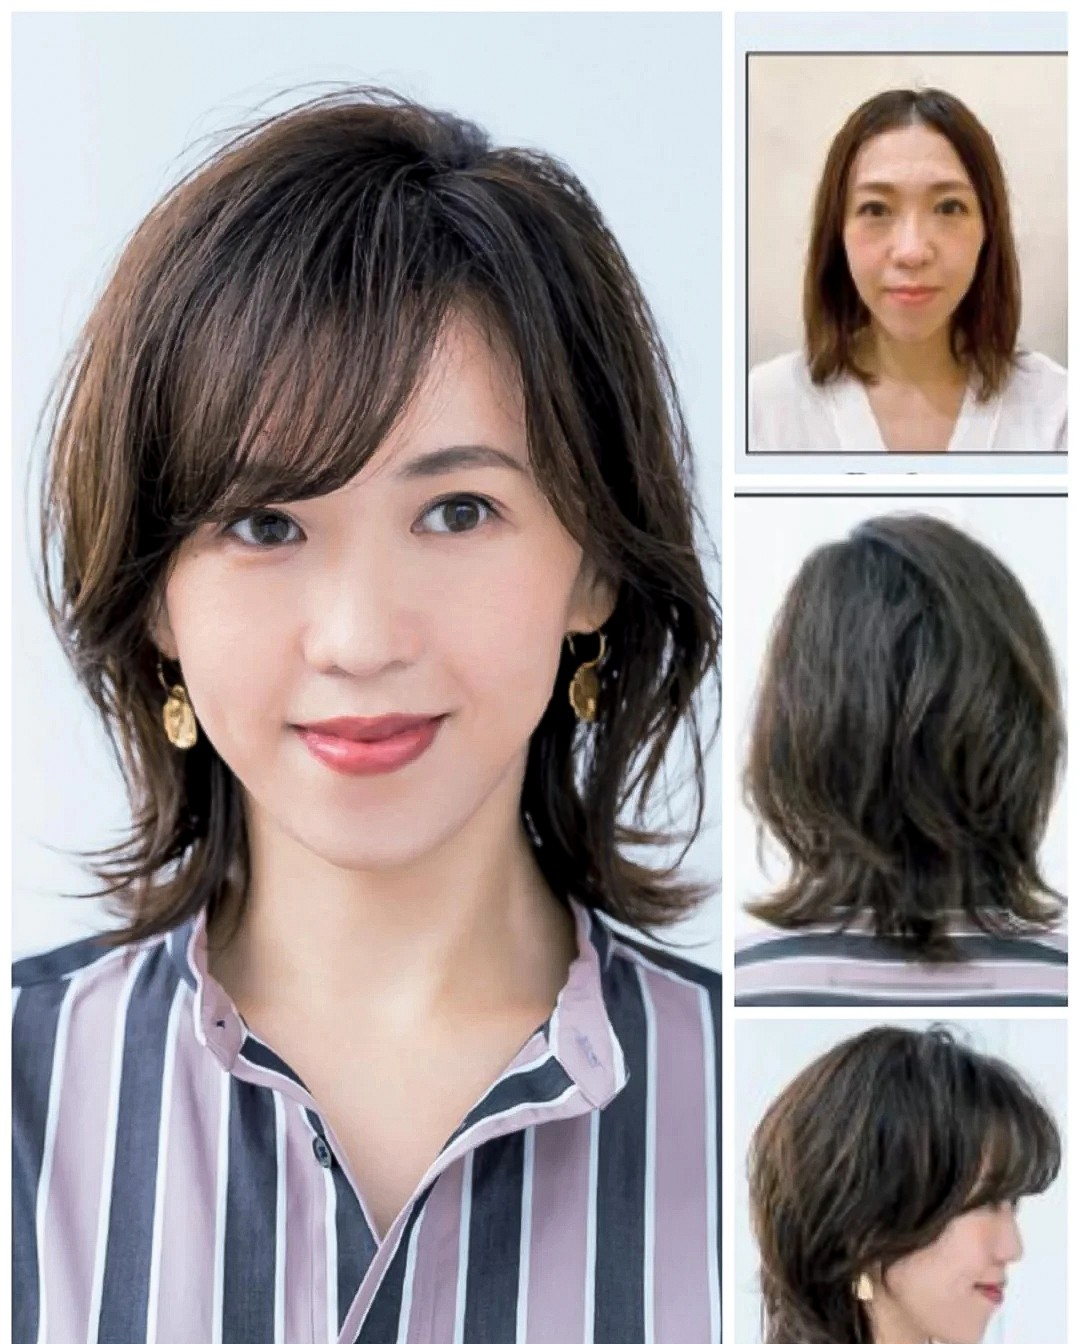 50岁女人如何选择发型?记住这3个减龄秘诀,长发短发都好美